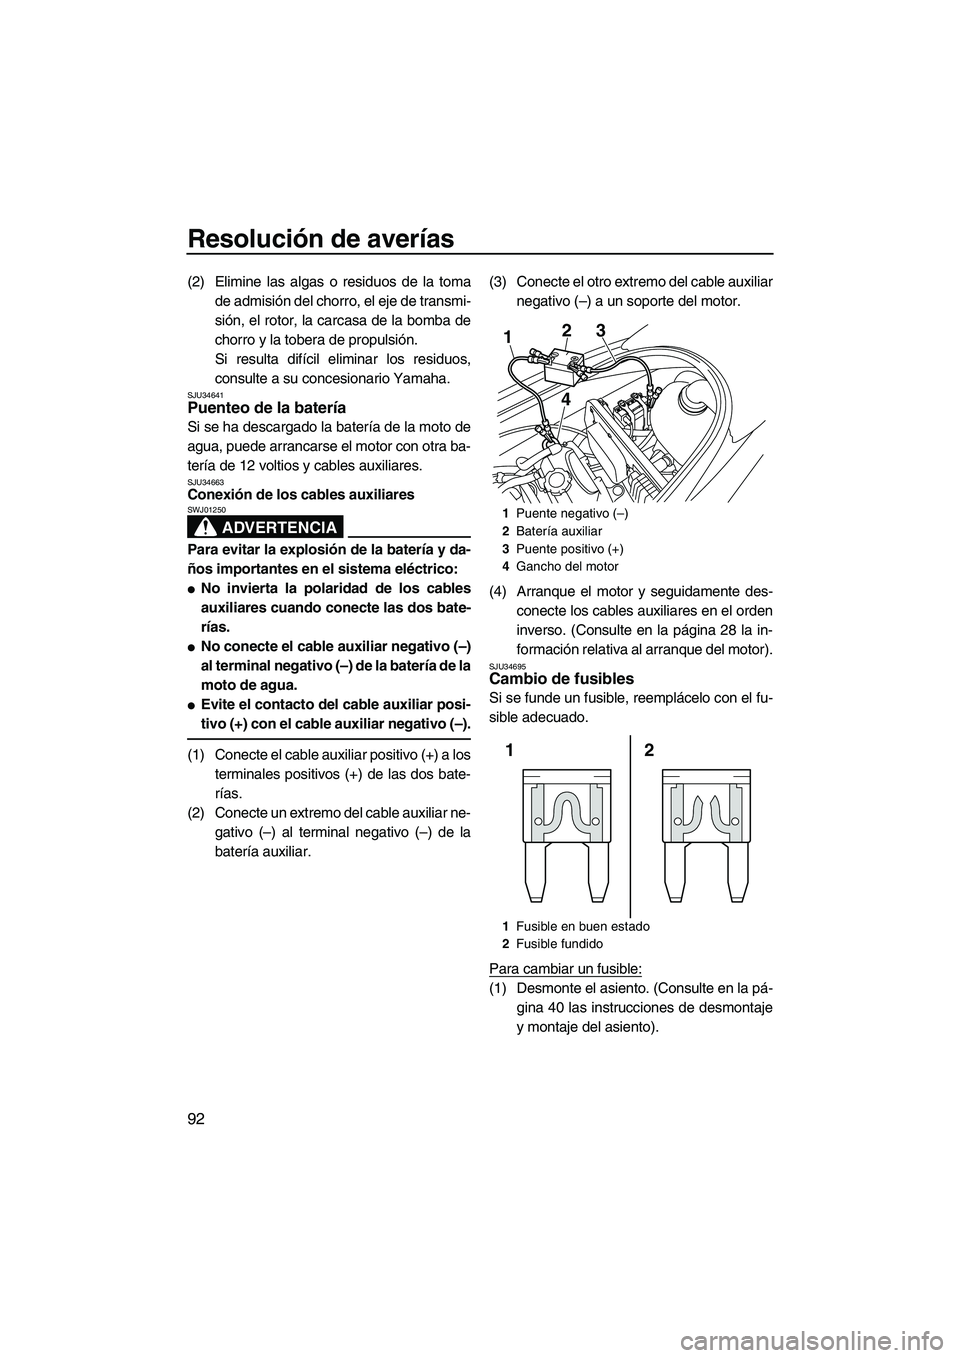 YAMAHA VX SPORT 2010  Manuale de Empleo (in Spanish) Resolución de averías
92
(2) Elimine las algas o residuos de la toma
de admisión del chorro, el eje de transmi-
sión, el rotor, la carcasa de la bomba de
chorro y la tobera de propulsión.
Si resu